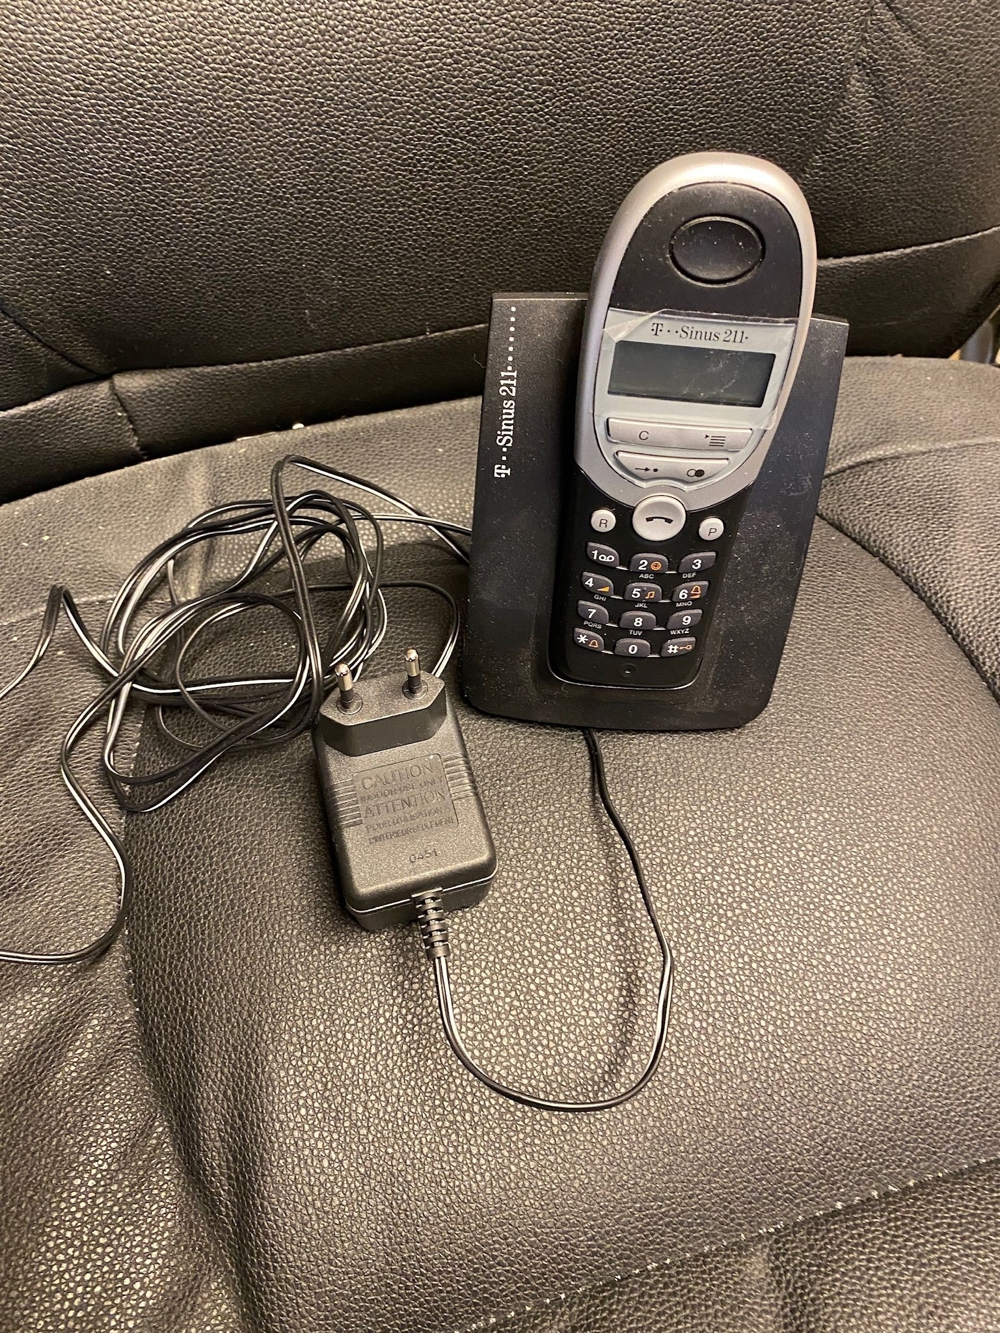 SchnurlosTelefon Telekom T-Sinus 211, gebraucht